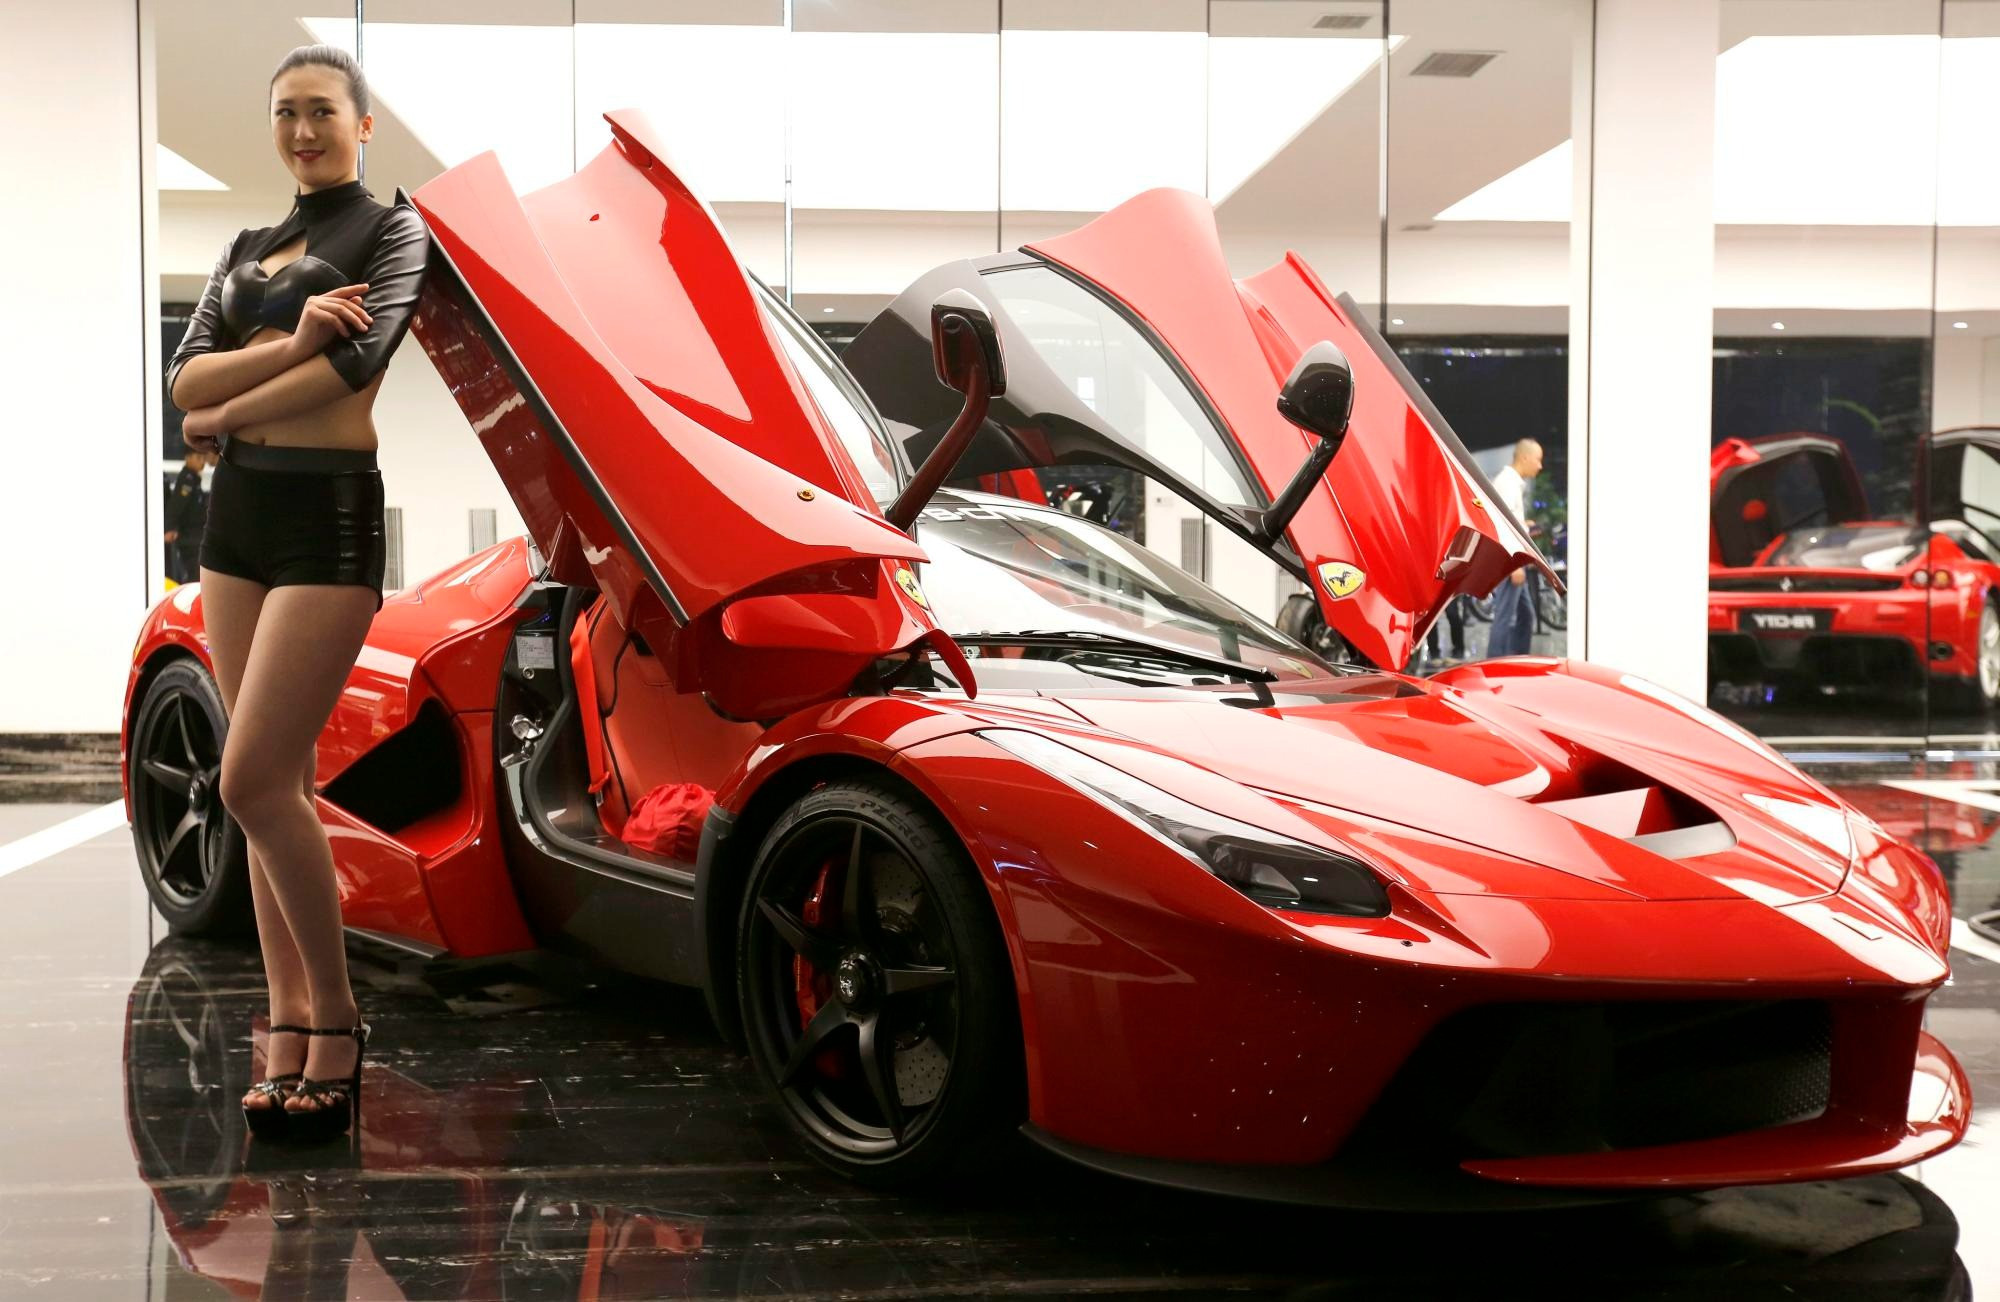 Siêu xe Ferrari nhắm đến phụ nữ giàu có Trung Quốc - Ảnh 3.